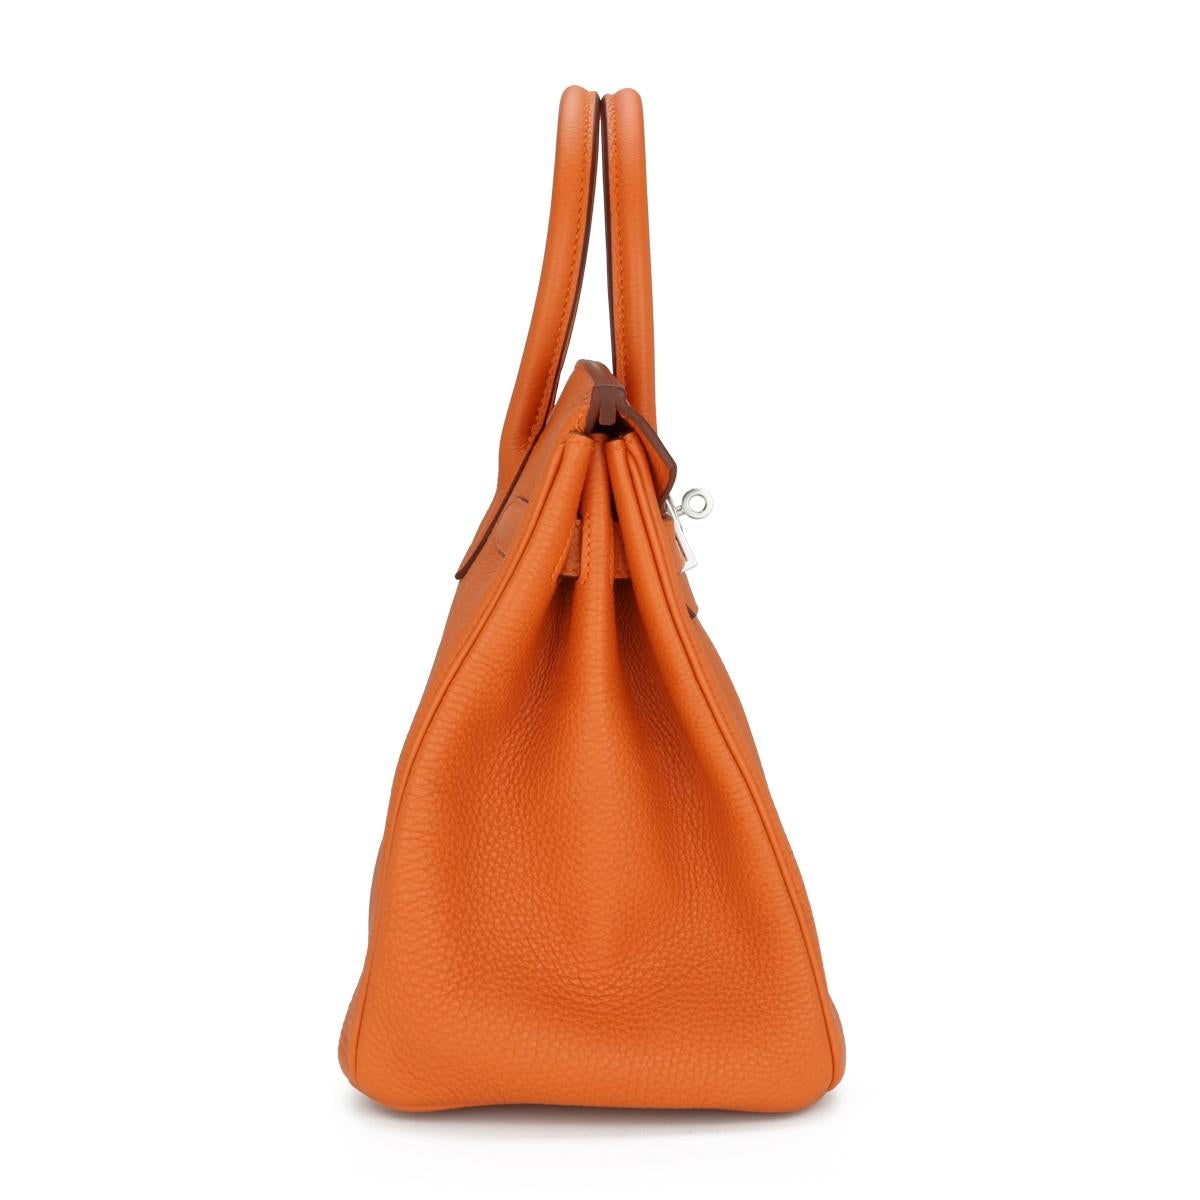 Hermès Birkin Bag 30cm Orange Togo Leder mit Palladium Hardware Stempel M 2009 für Damen oder Herren